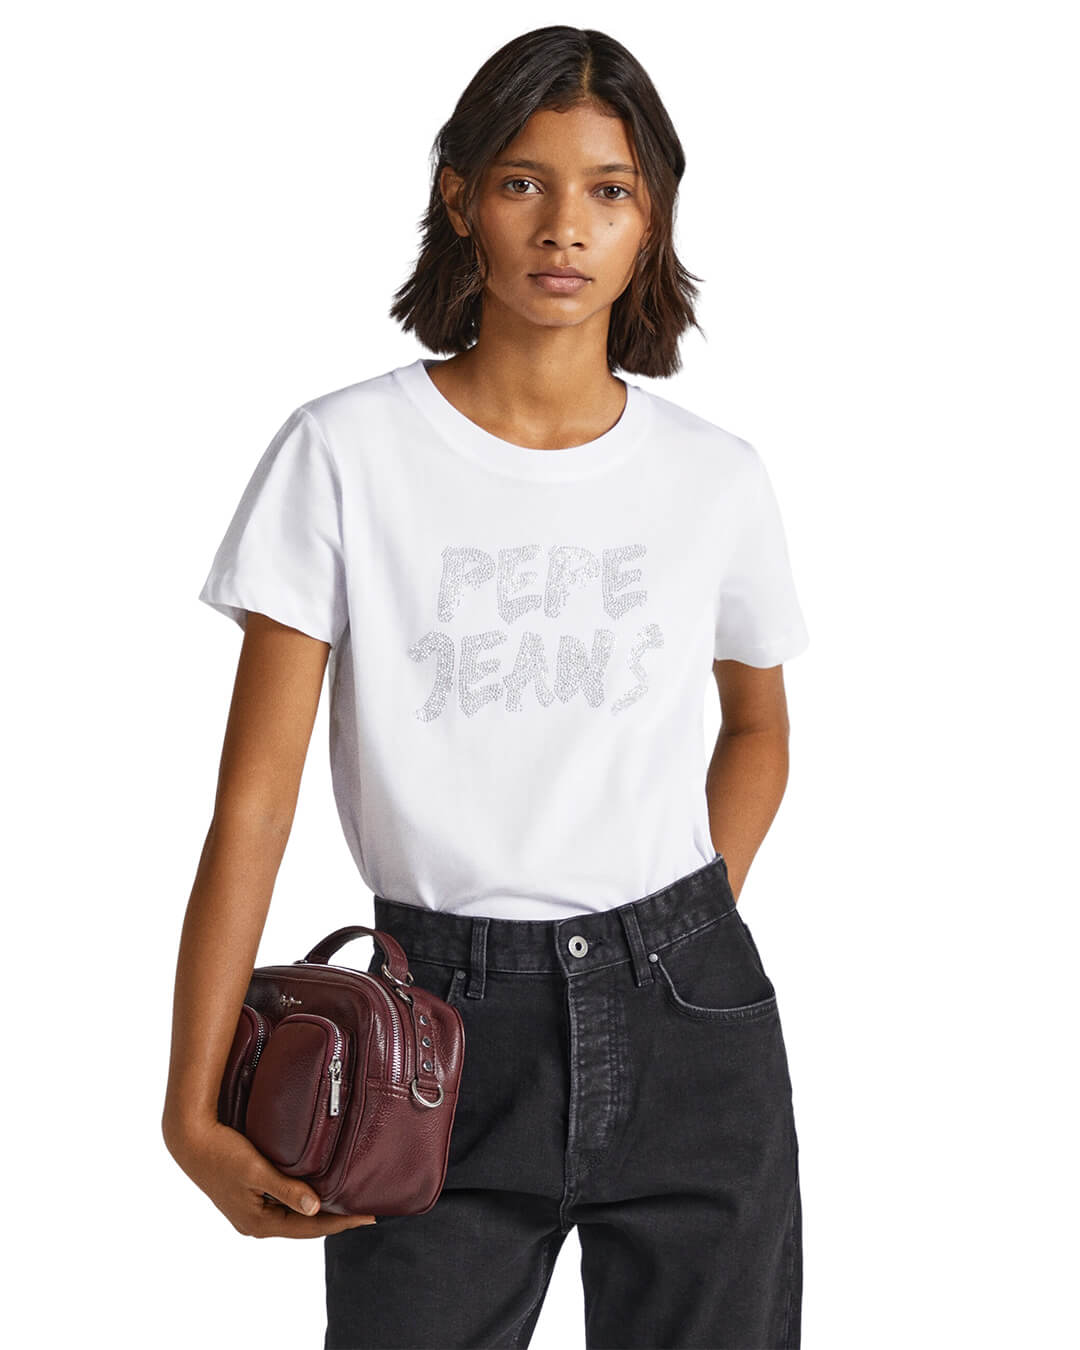 Pepe Jeans Bria White T-Shirt | Bortex - Bortex Fine Tailoring